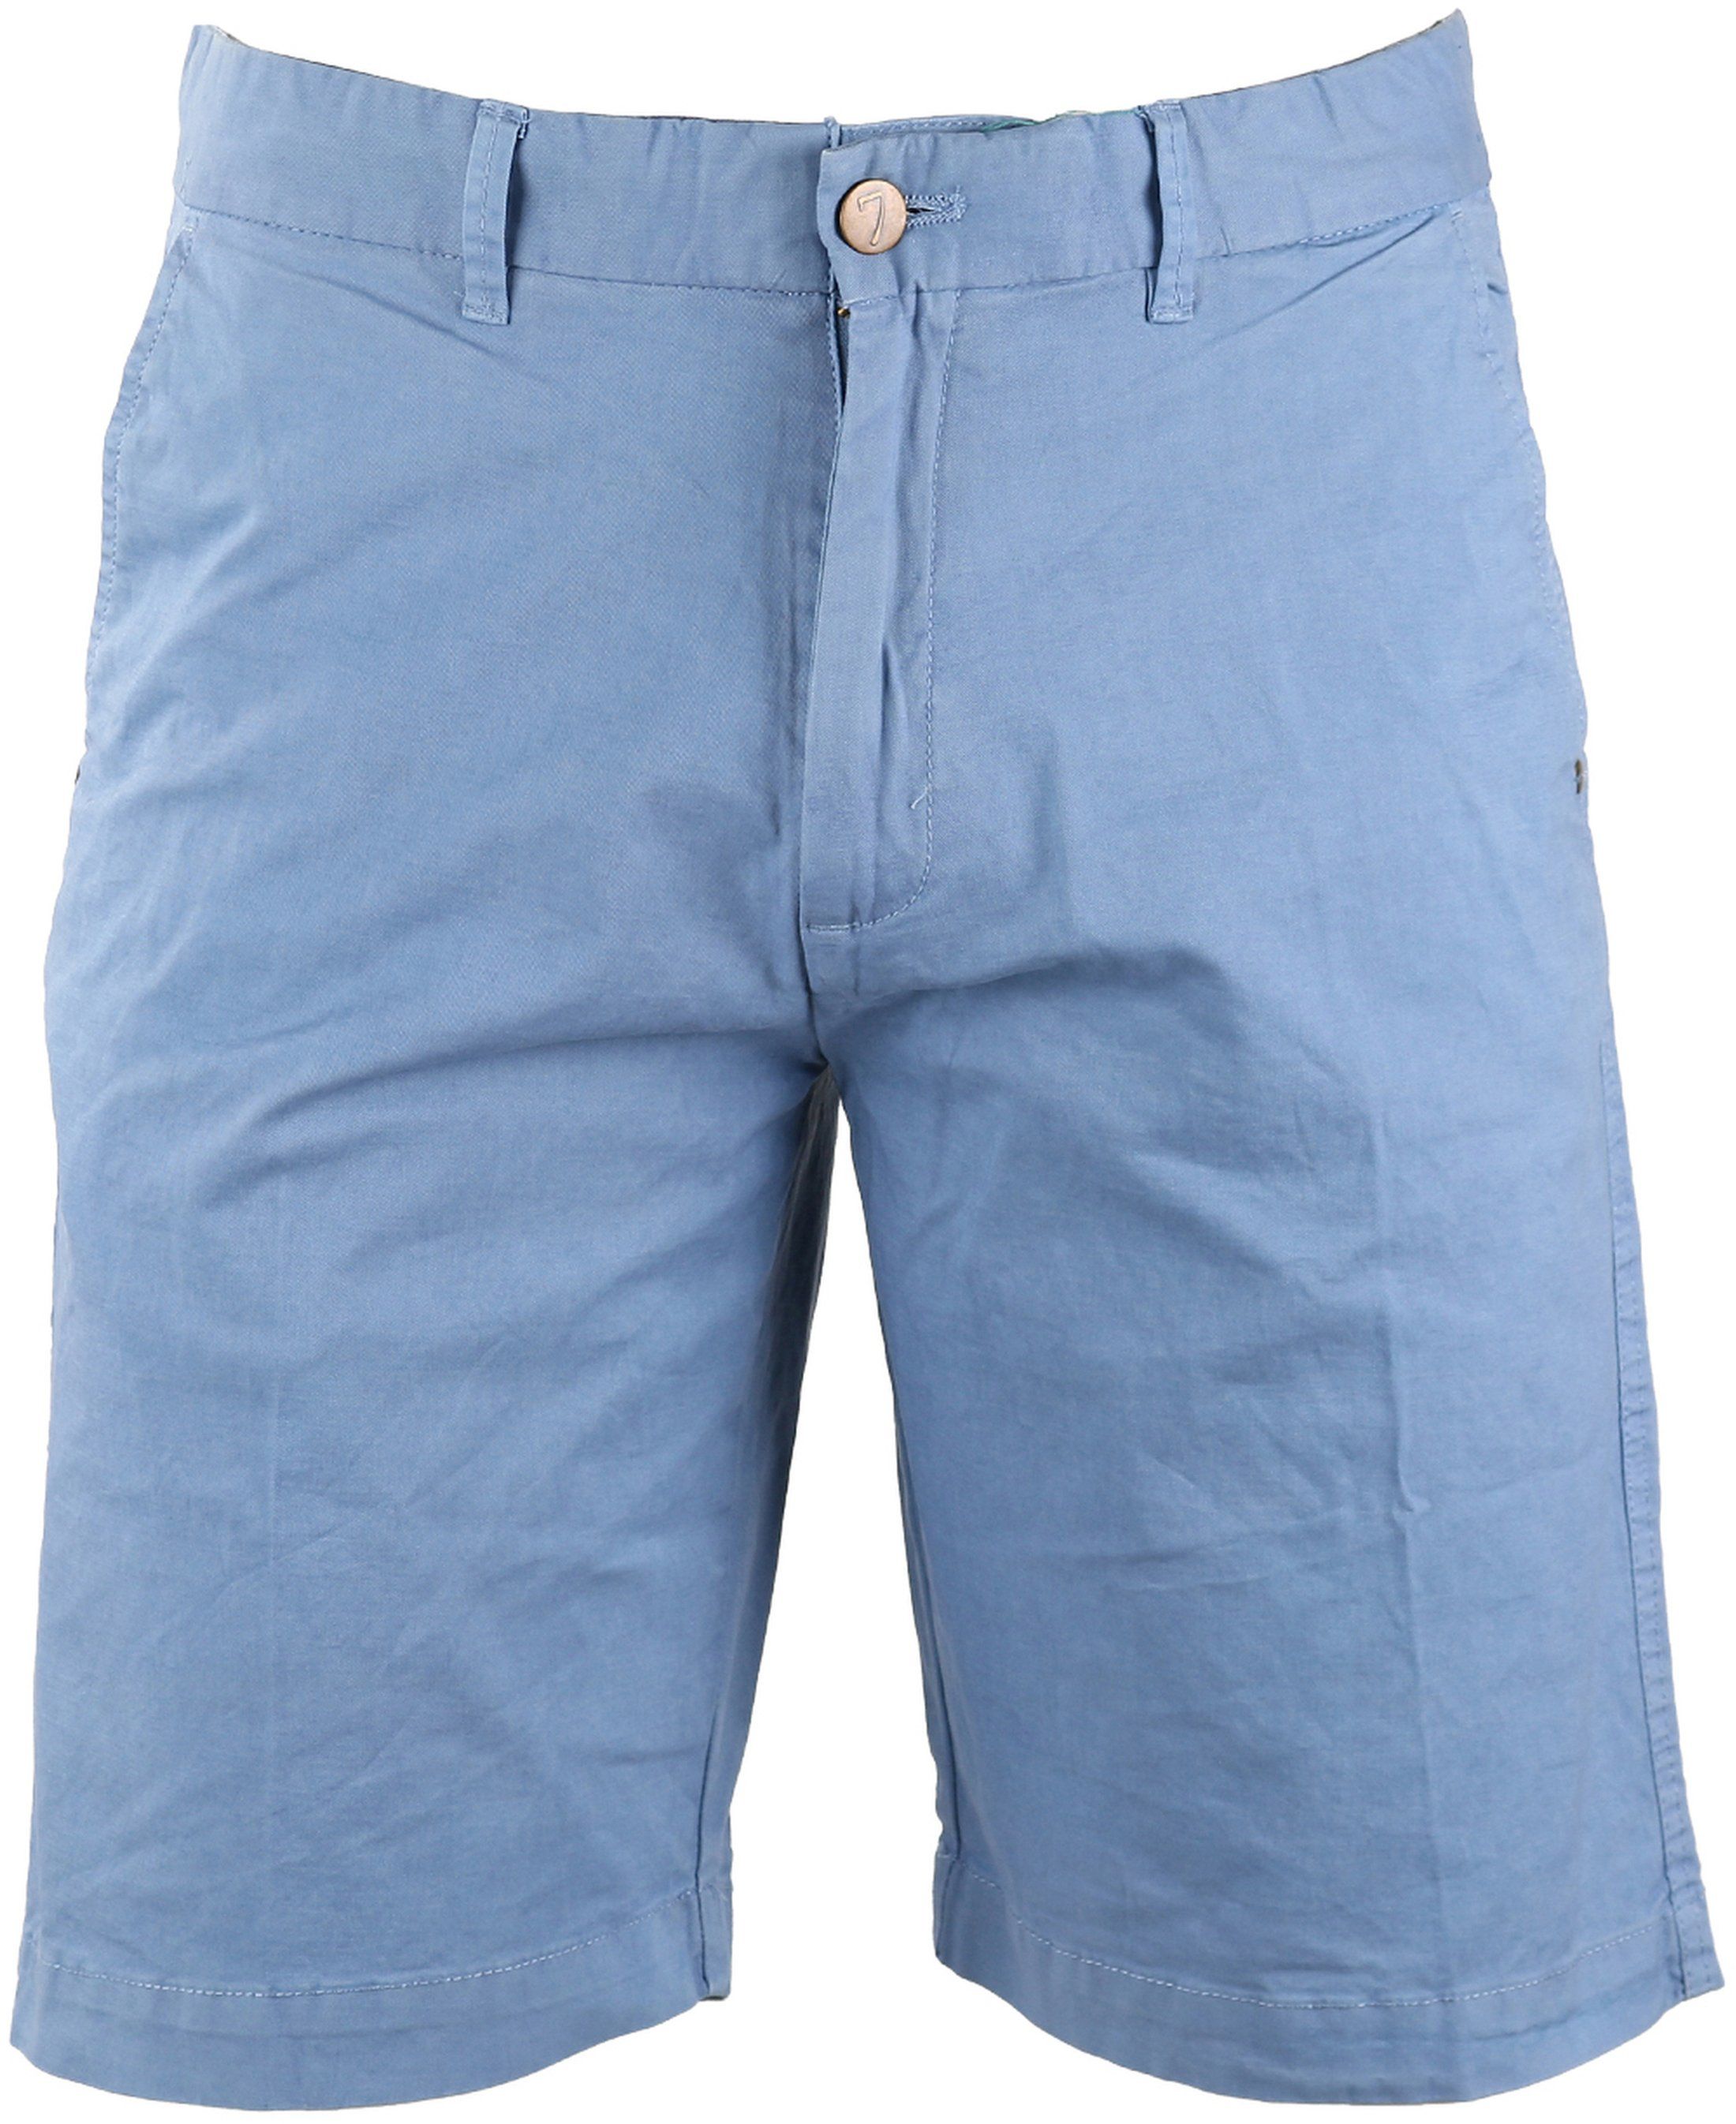 Basic Shorts Blue size 31